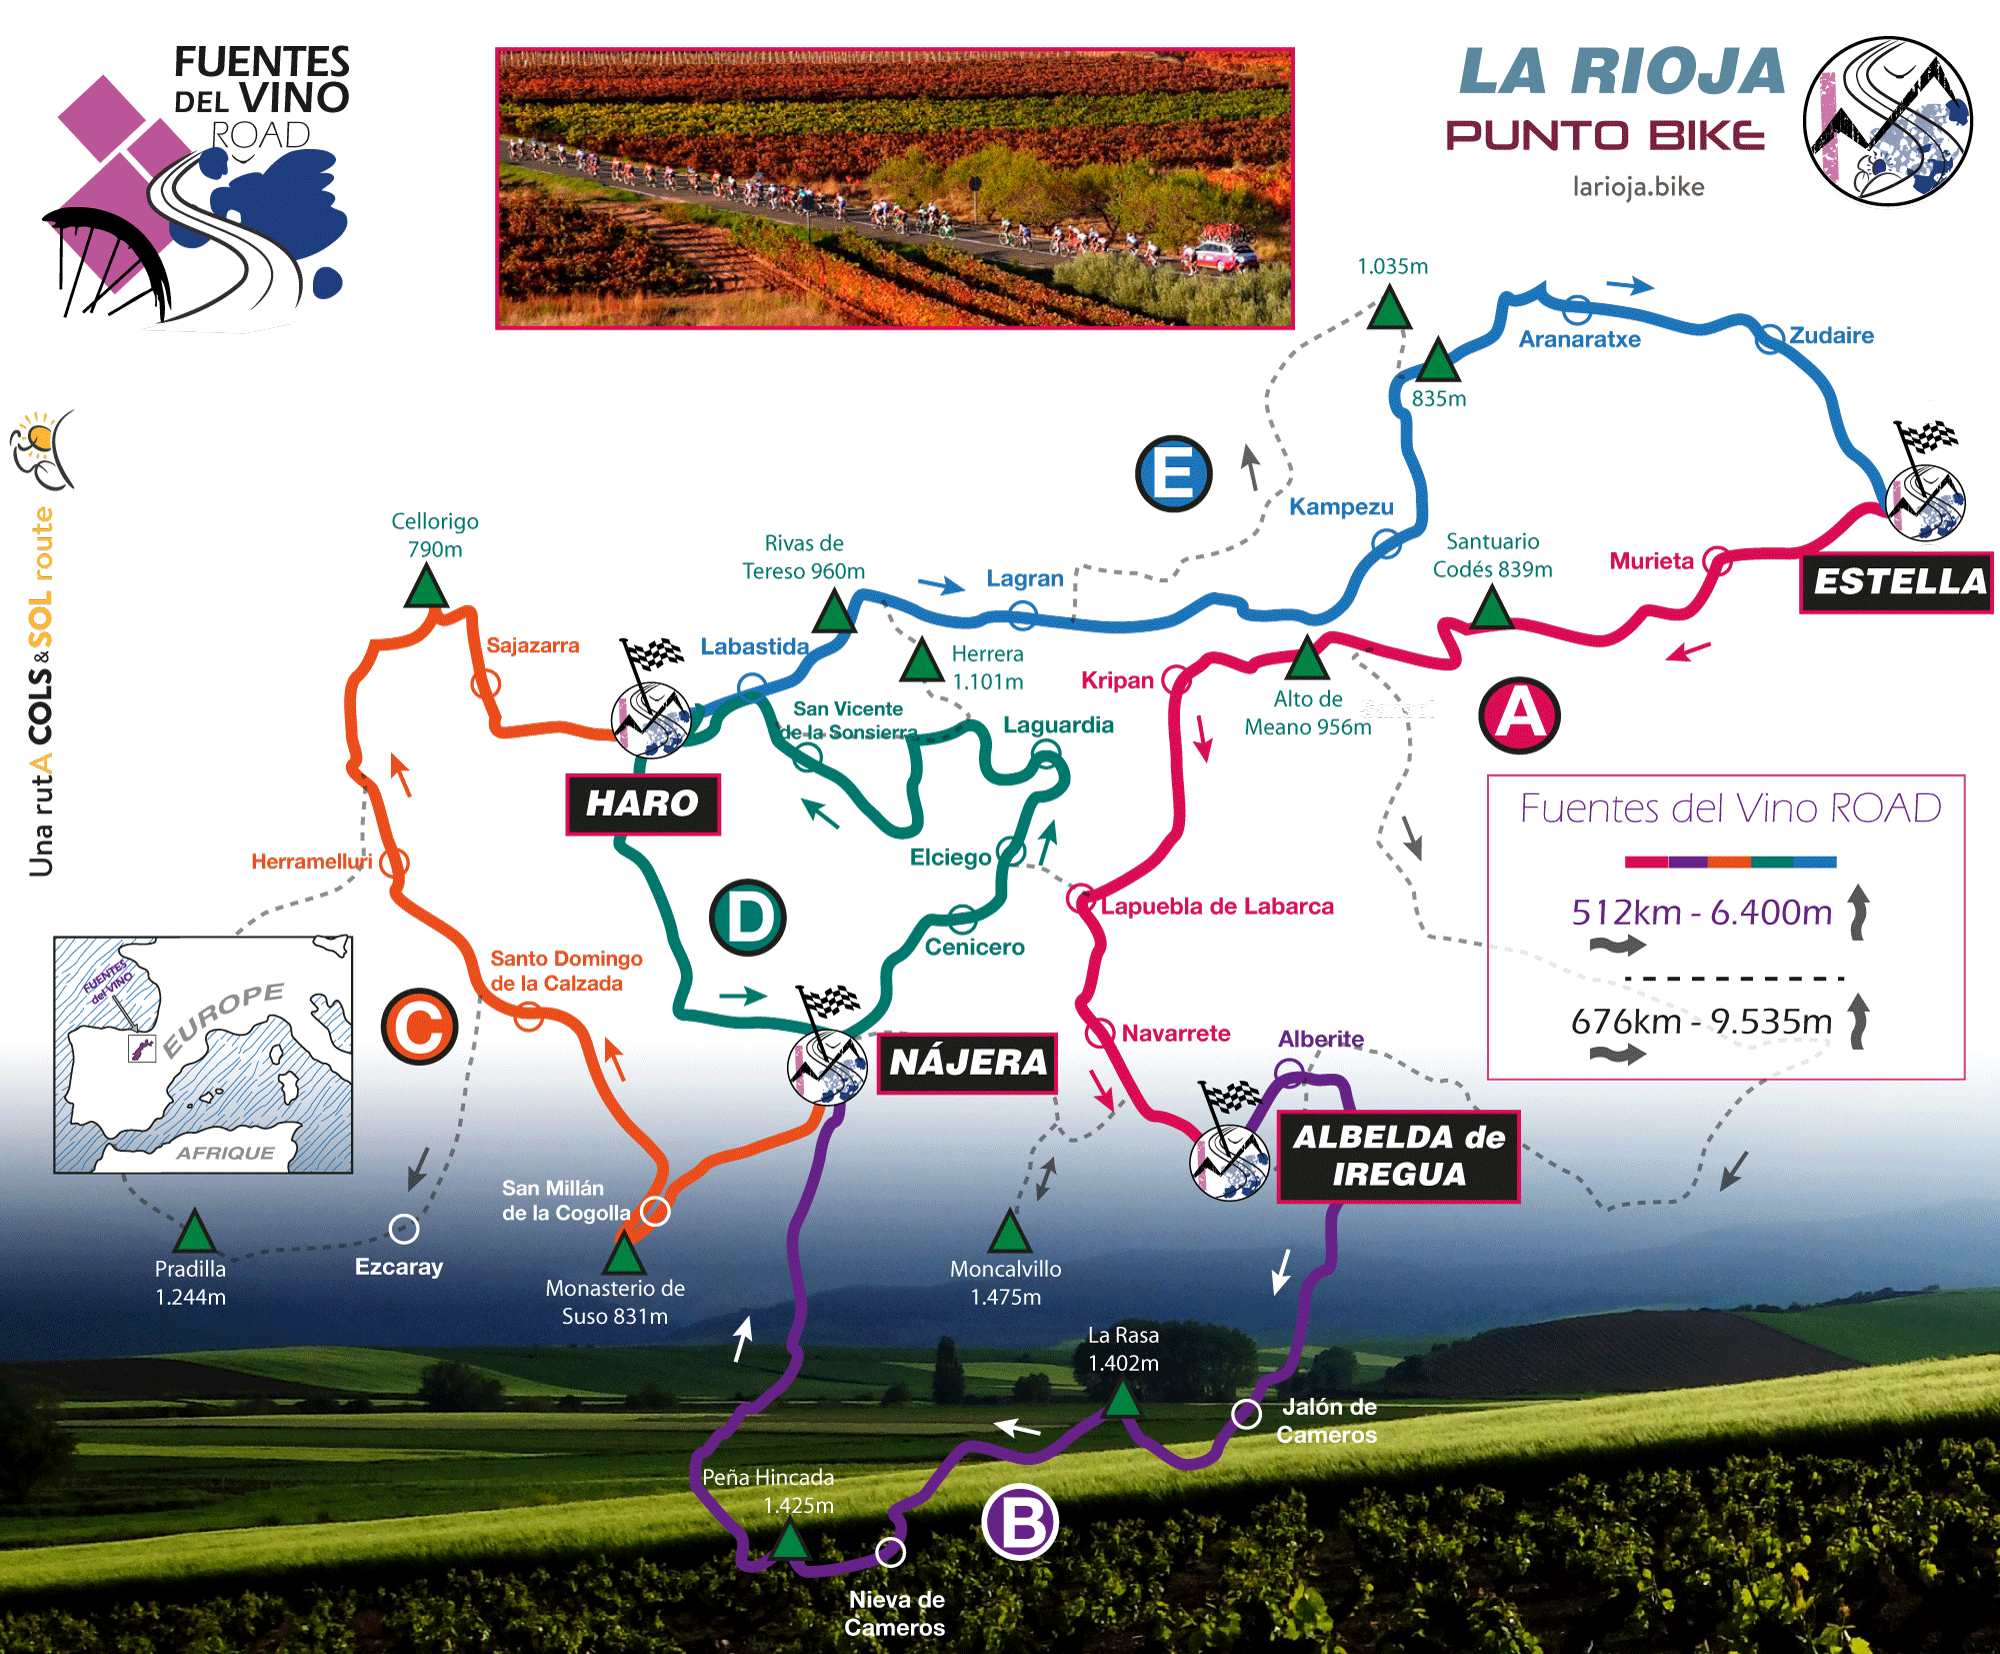 Fuentes-del-Vino-Road-mapa